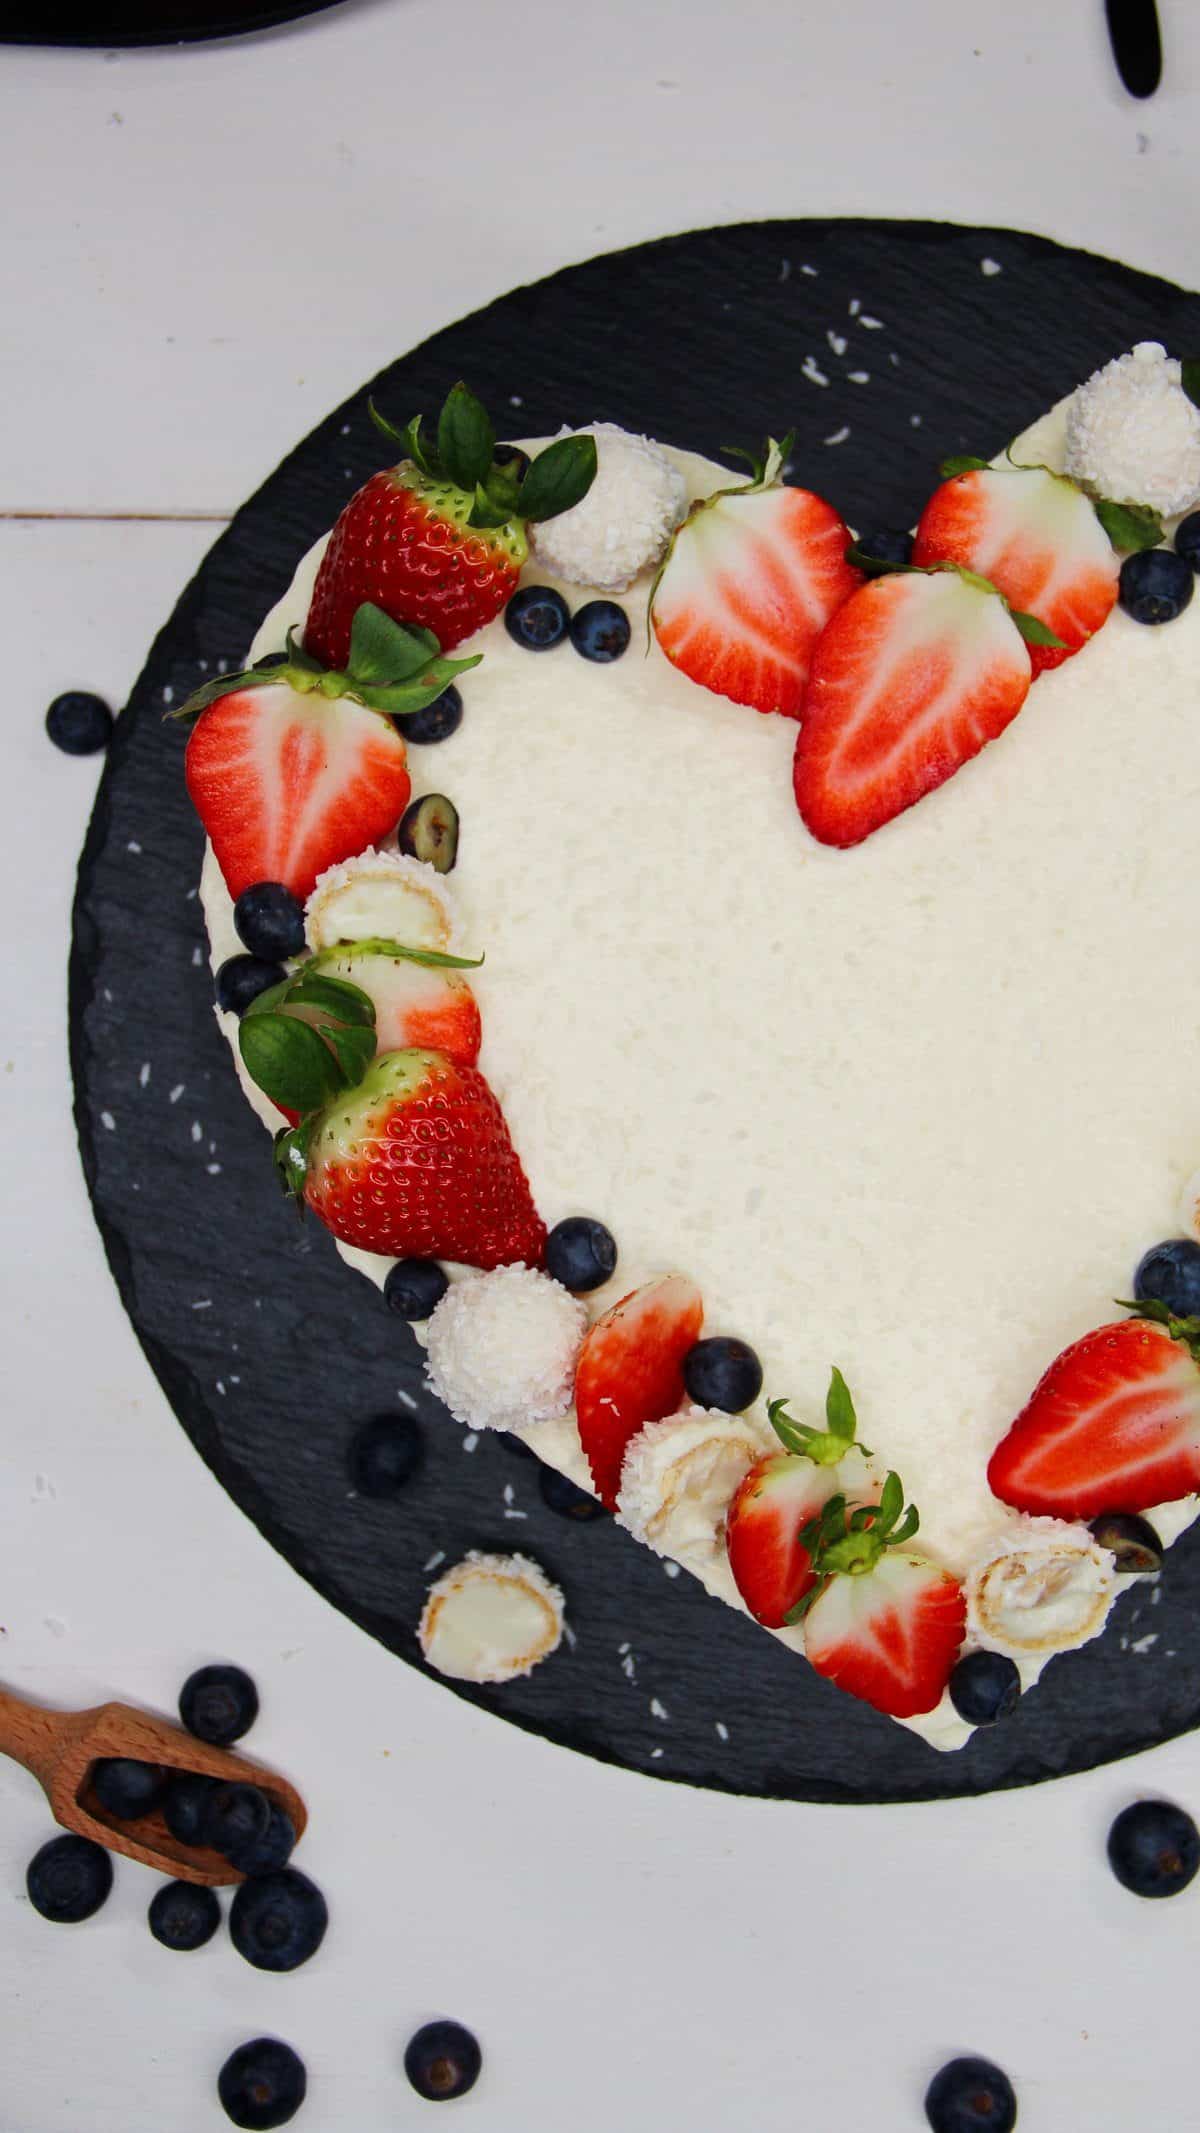 Raffaello Torte in Herzform auf einer schwarzen Schieferplatte. Mit Raffaellos, Erdbeeren und Blaubeeren dekoriert. Nahaufnahme.